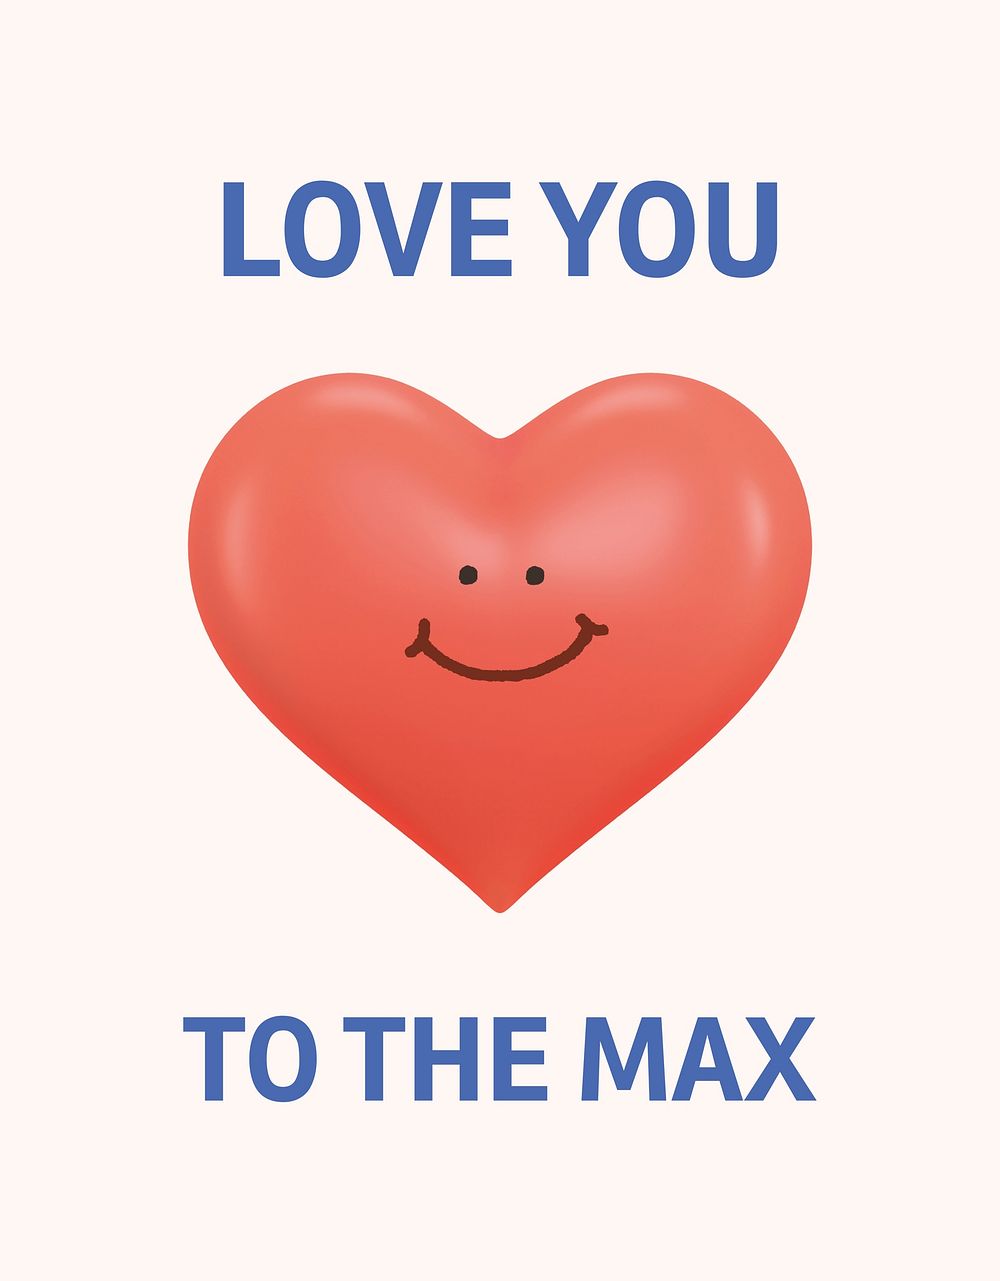 Love you flyer template, Valentine's celebration psd